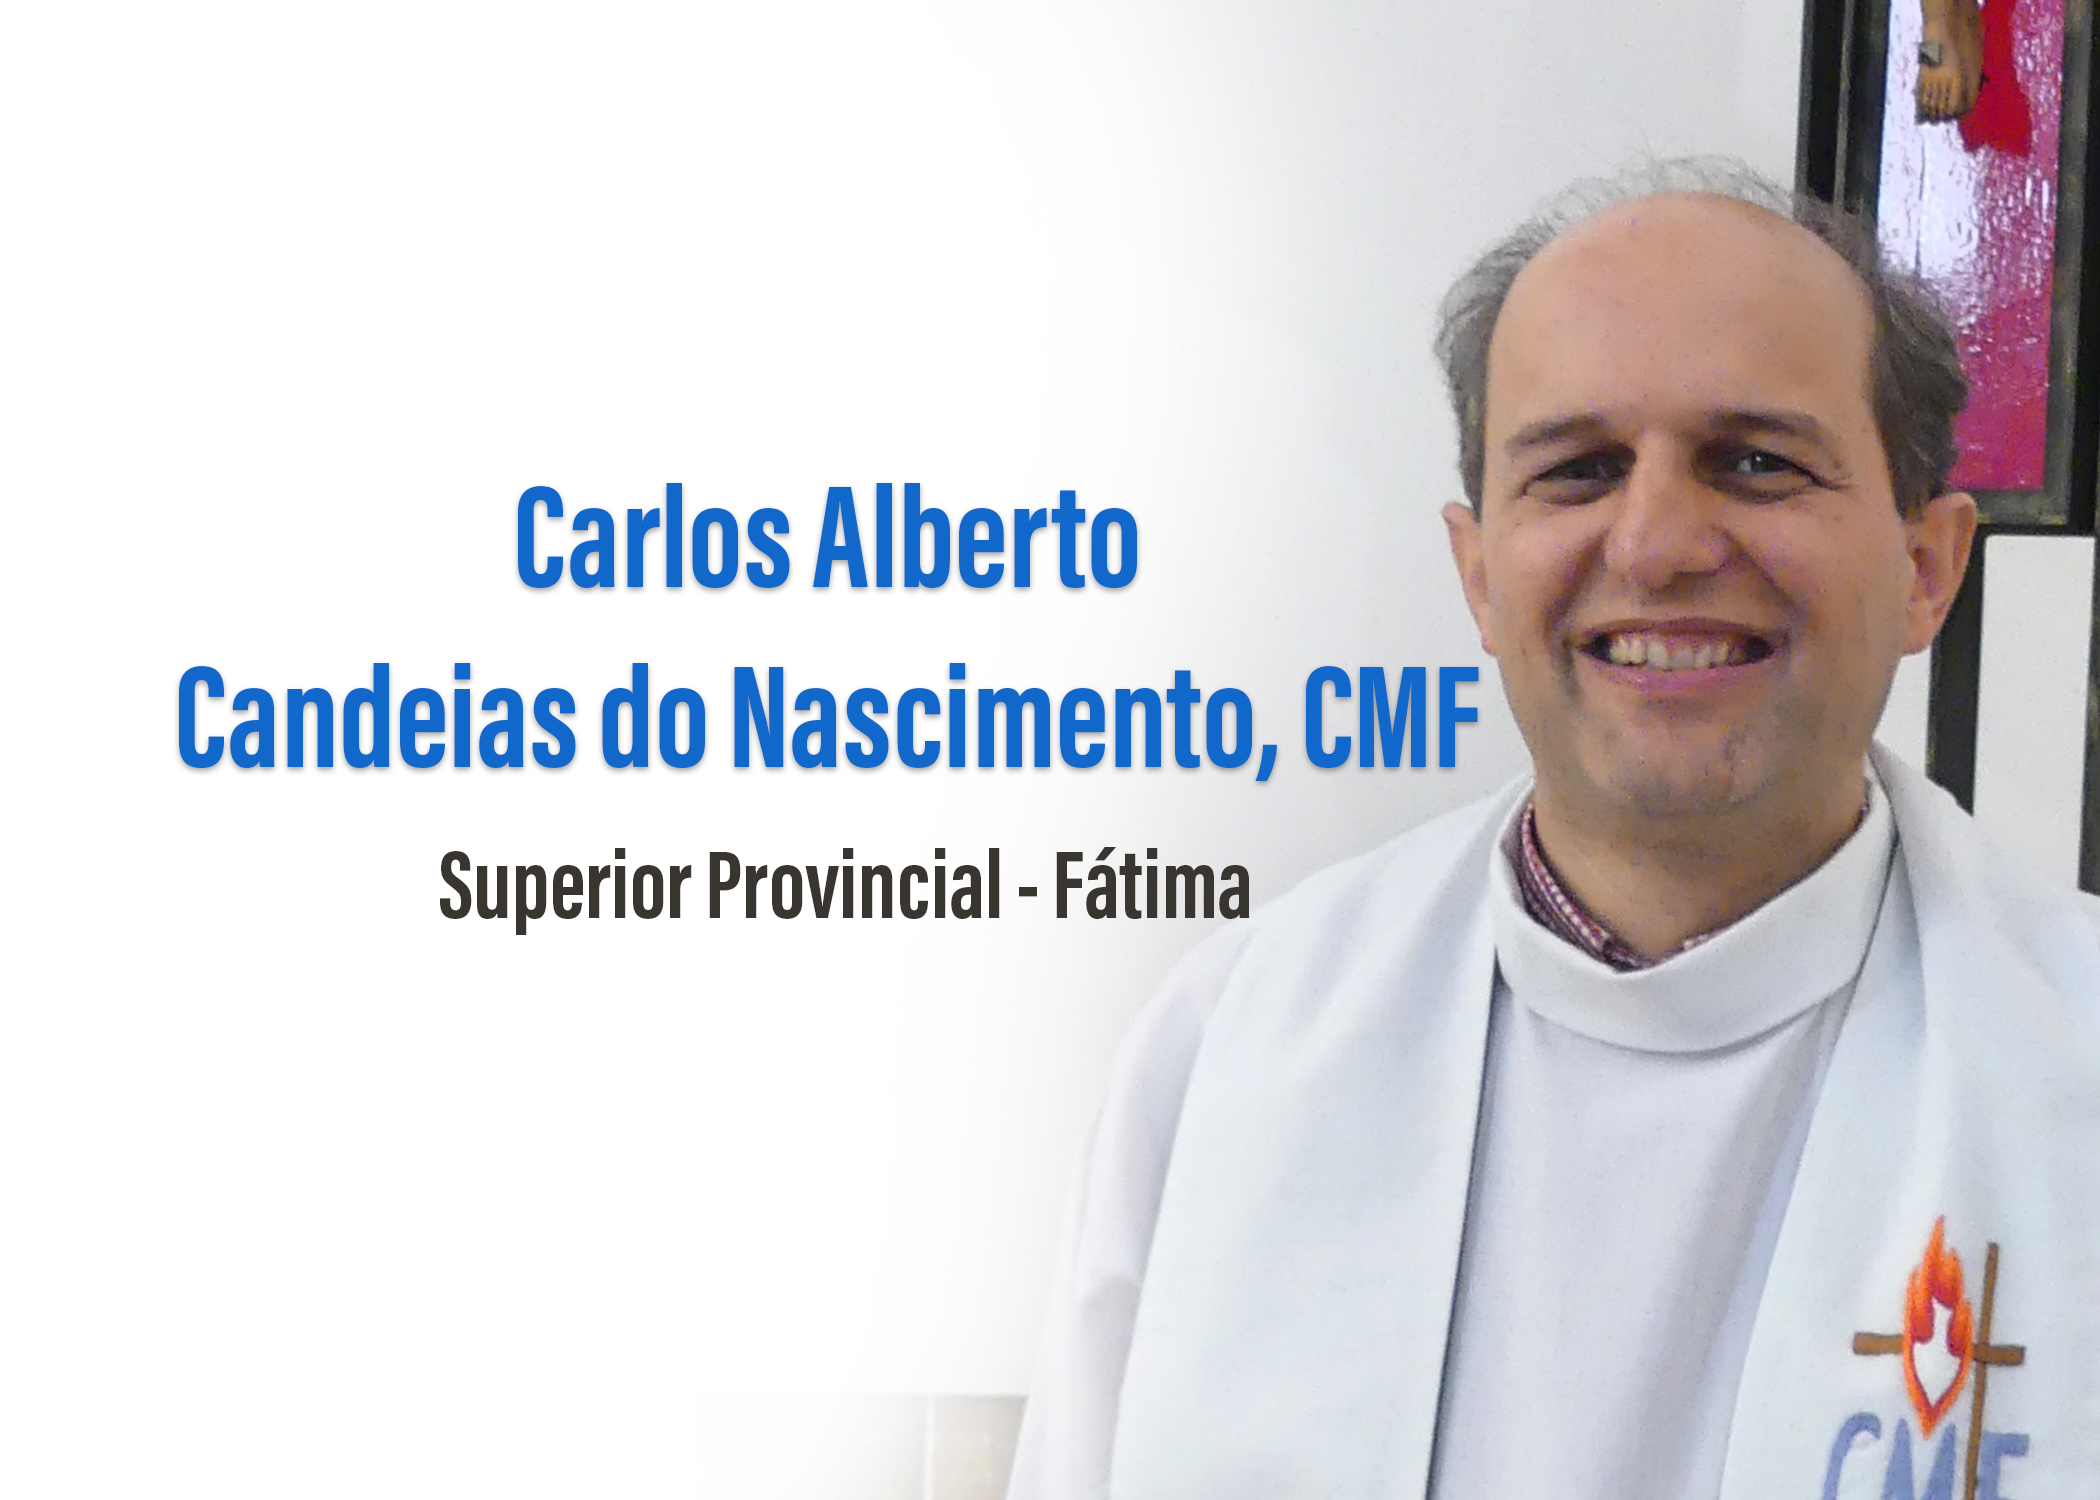 Fr. Carlos Alberto Candeias do Nascimento, CMF: Elected Provincial Superior of Fátima